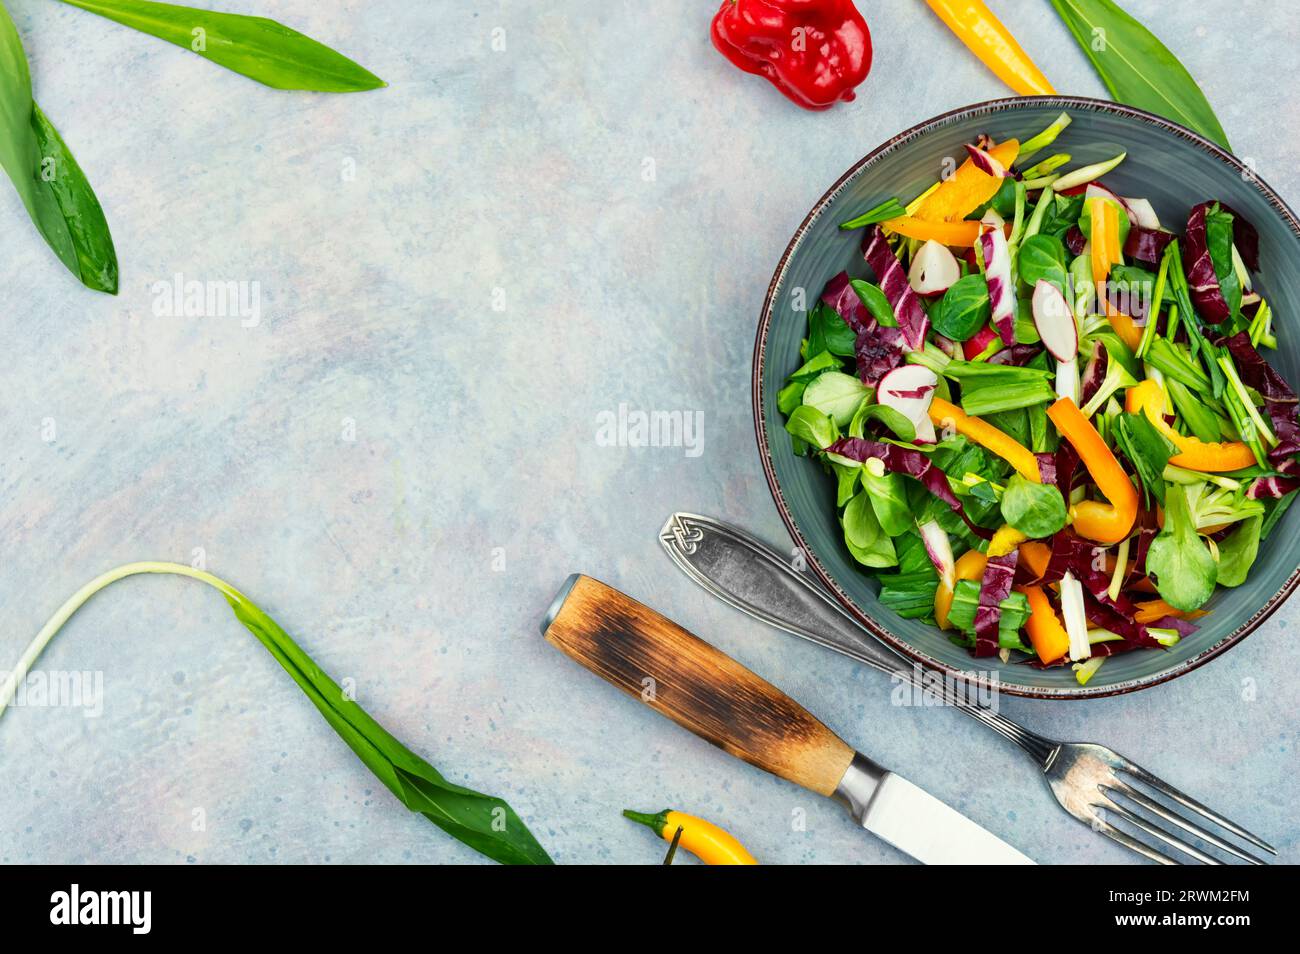 Salade verte avec légumes et poireaux ou ail sauvage. Alimentation saine des plantes de printemps. Espace pour le texte Banque D'Images